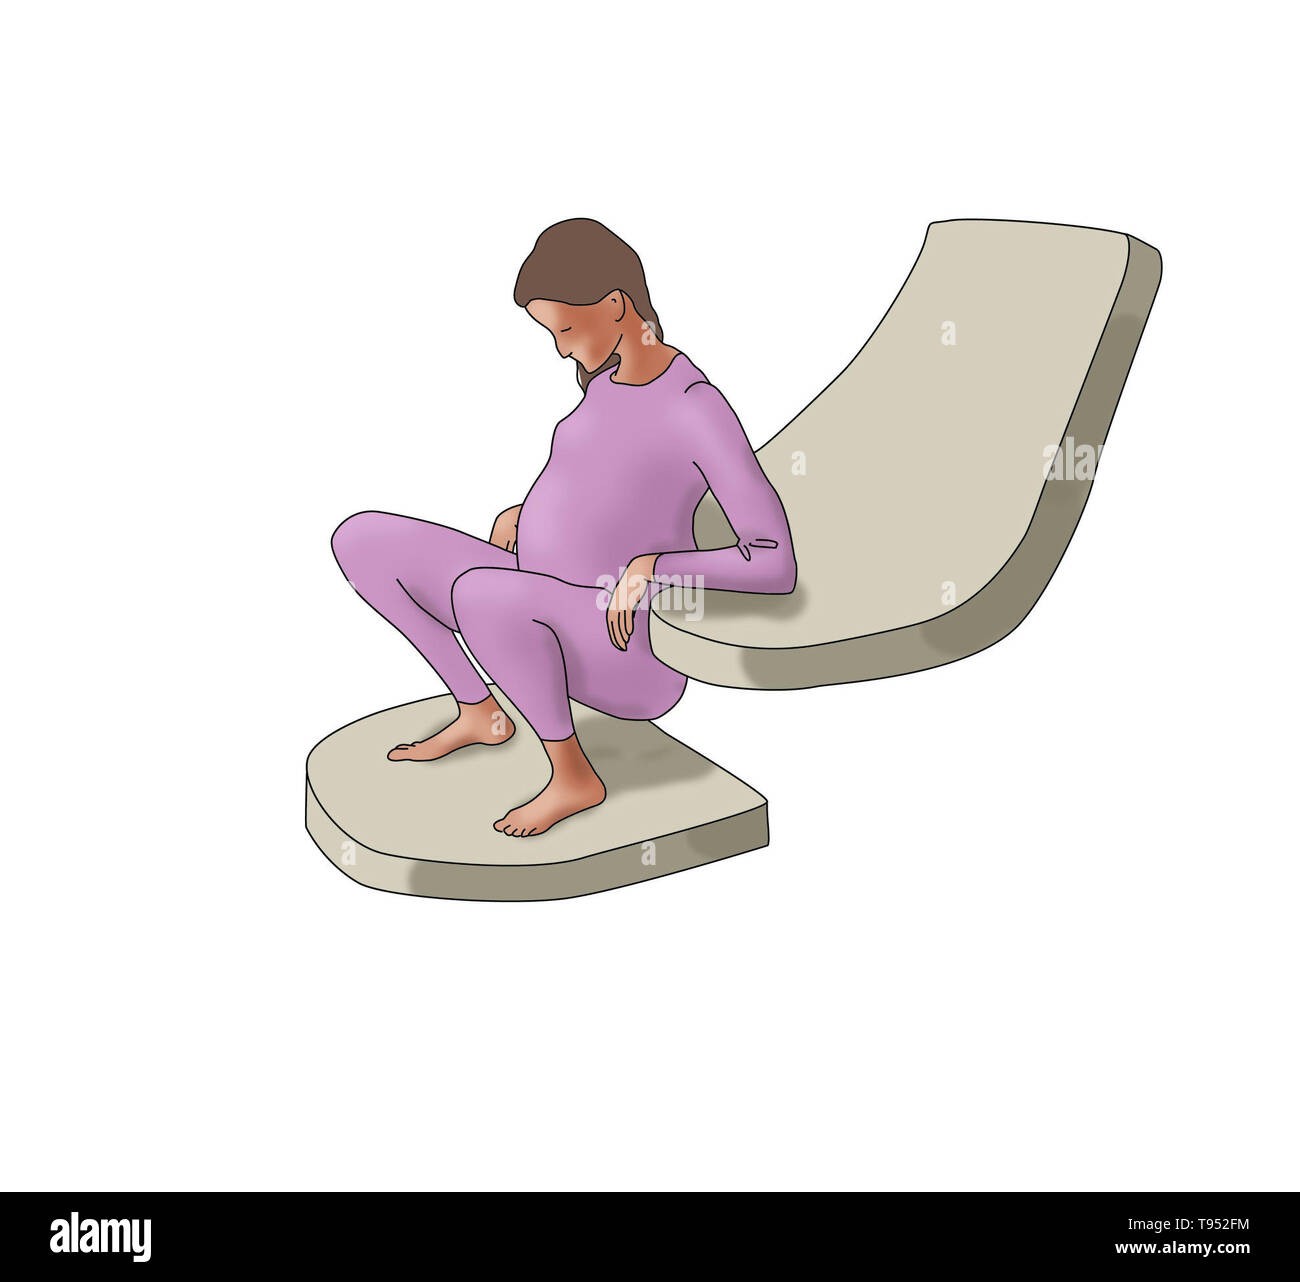 Illustrazione che mostra una donna in Squatting posizione del parto. Foto Stock